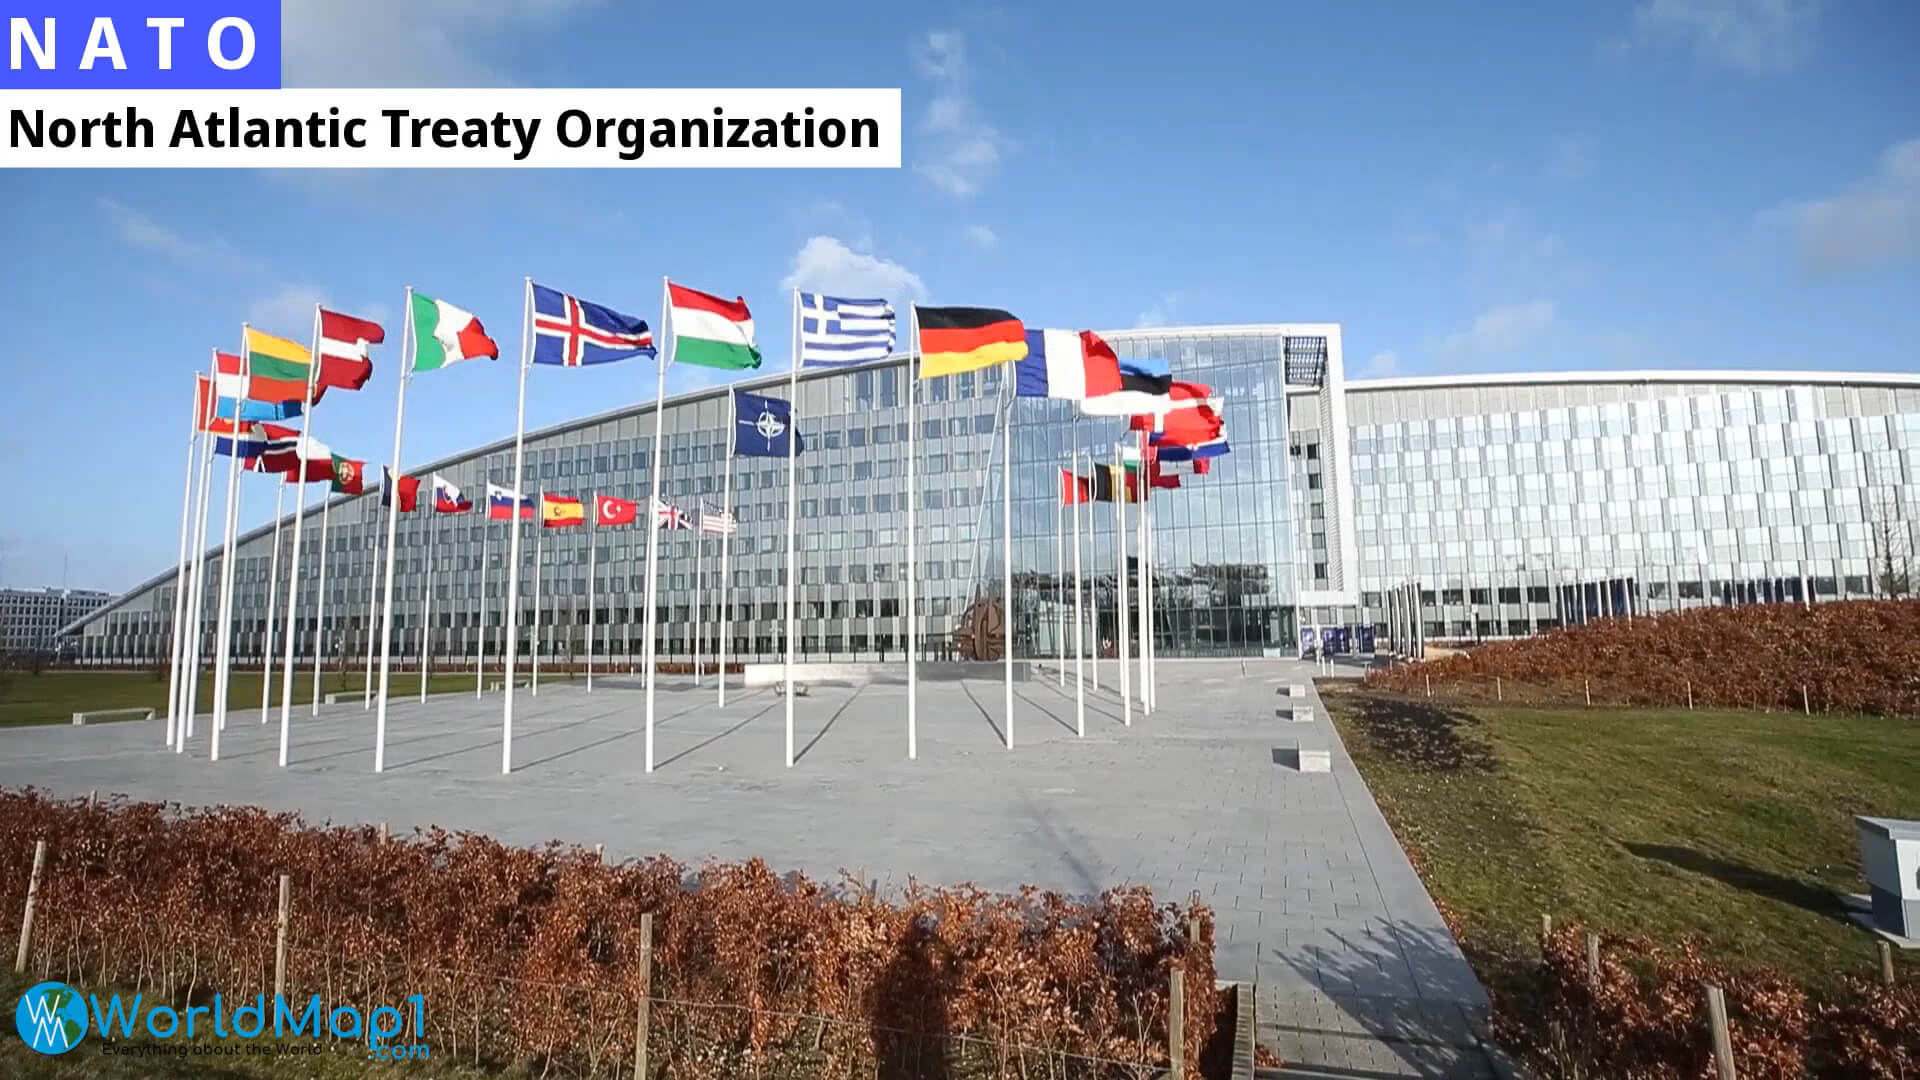 NATO Headquarter in Brussel Belgium